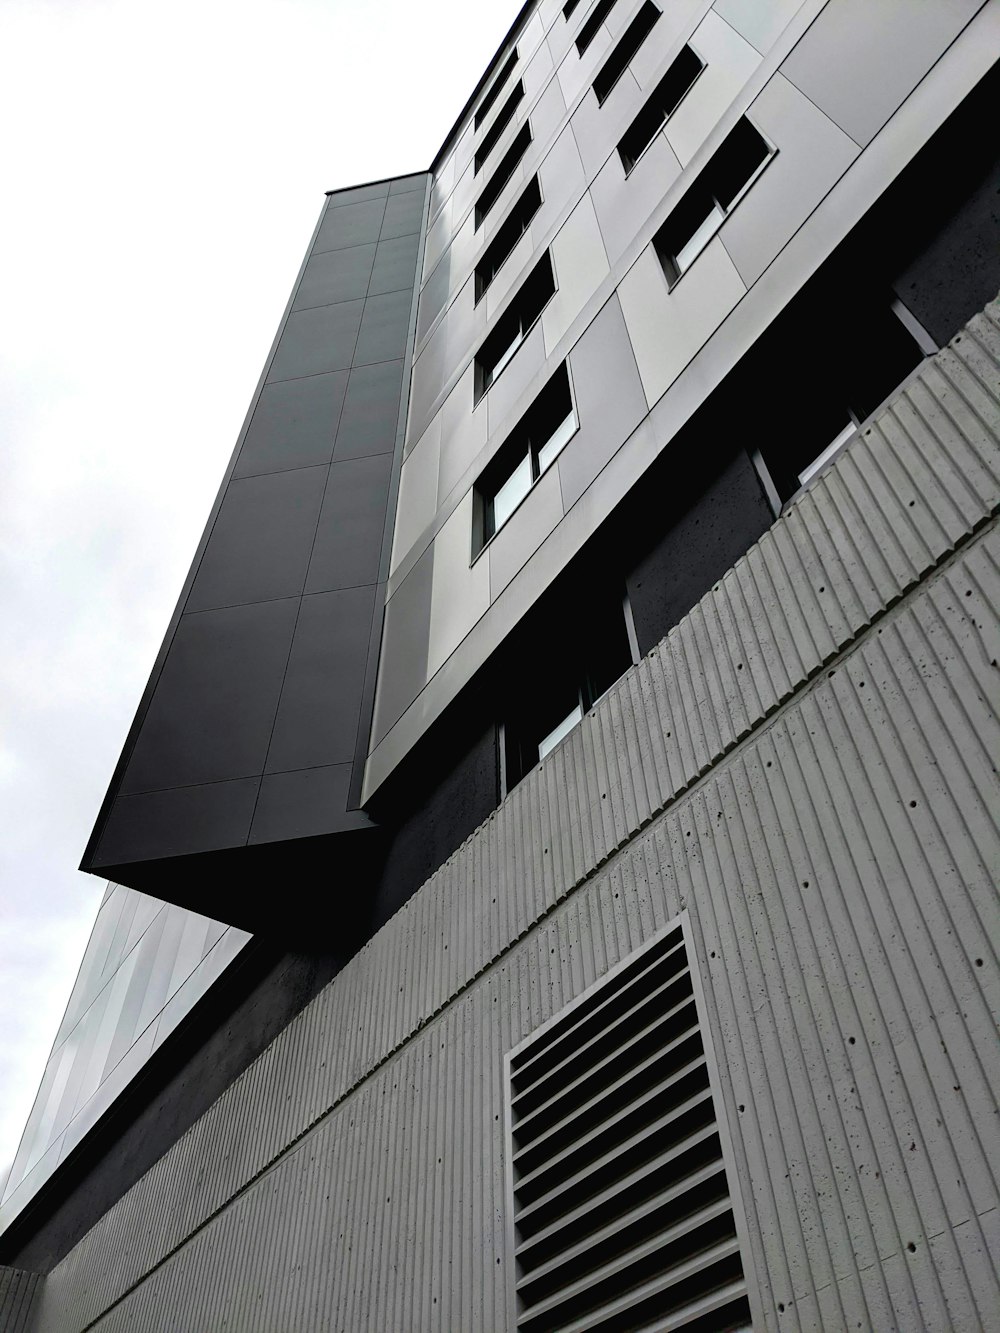 낮 동안 하얀 하늘 아래 회색 콘크리트 건물